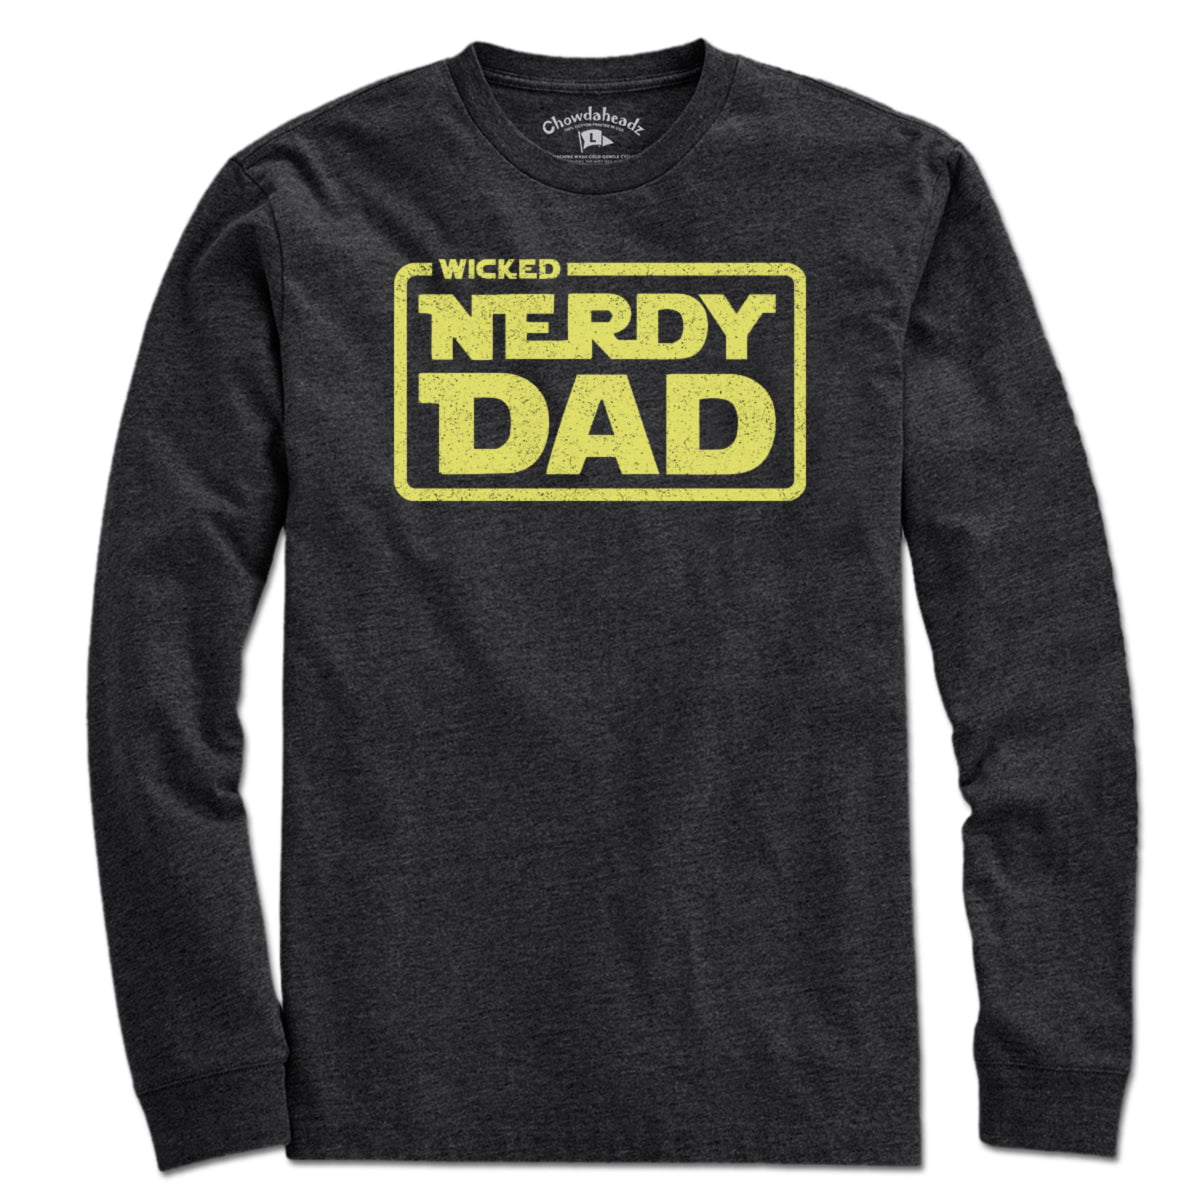 Wicked Nerdy Dad T-Shirt - Chowdaheadz